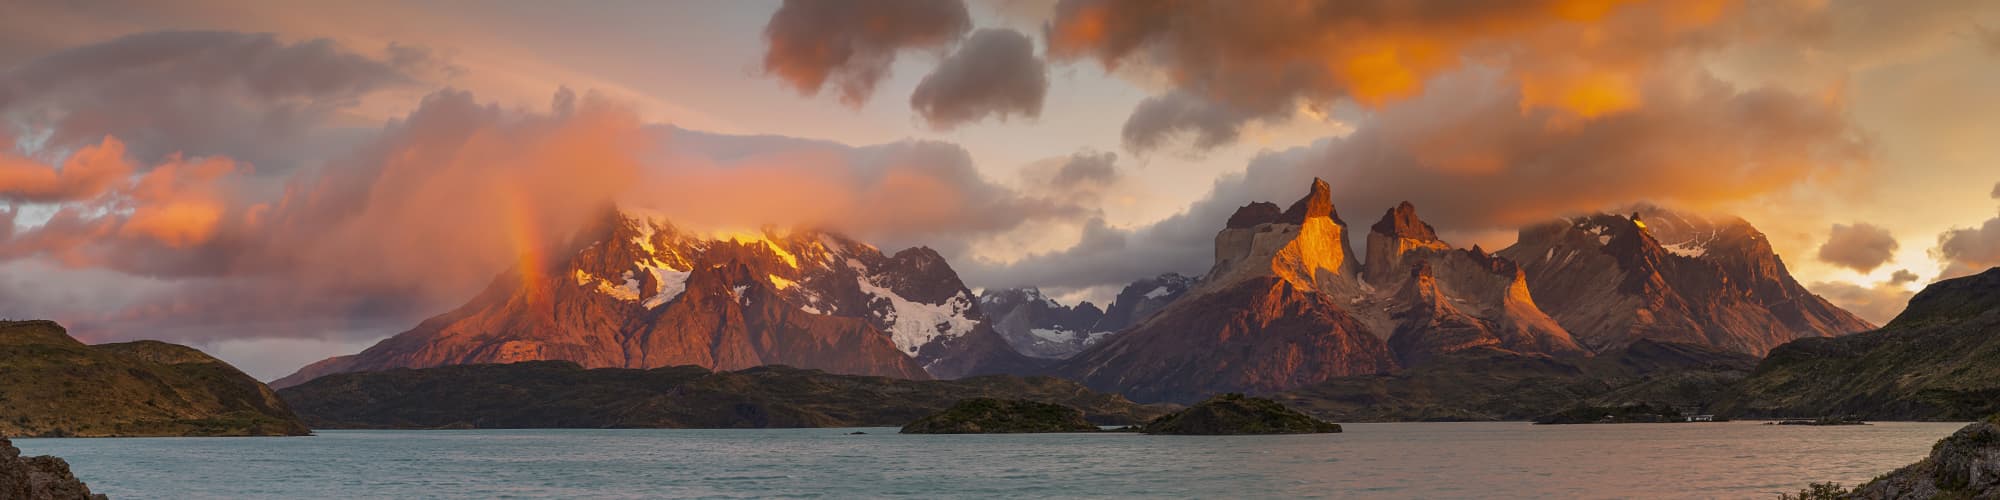 Voyage sur mesure Patagonie © DieterMeyrl